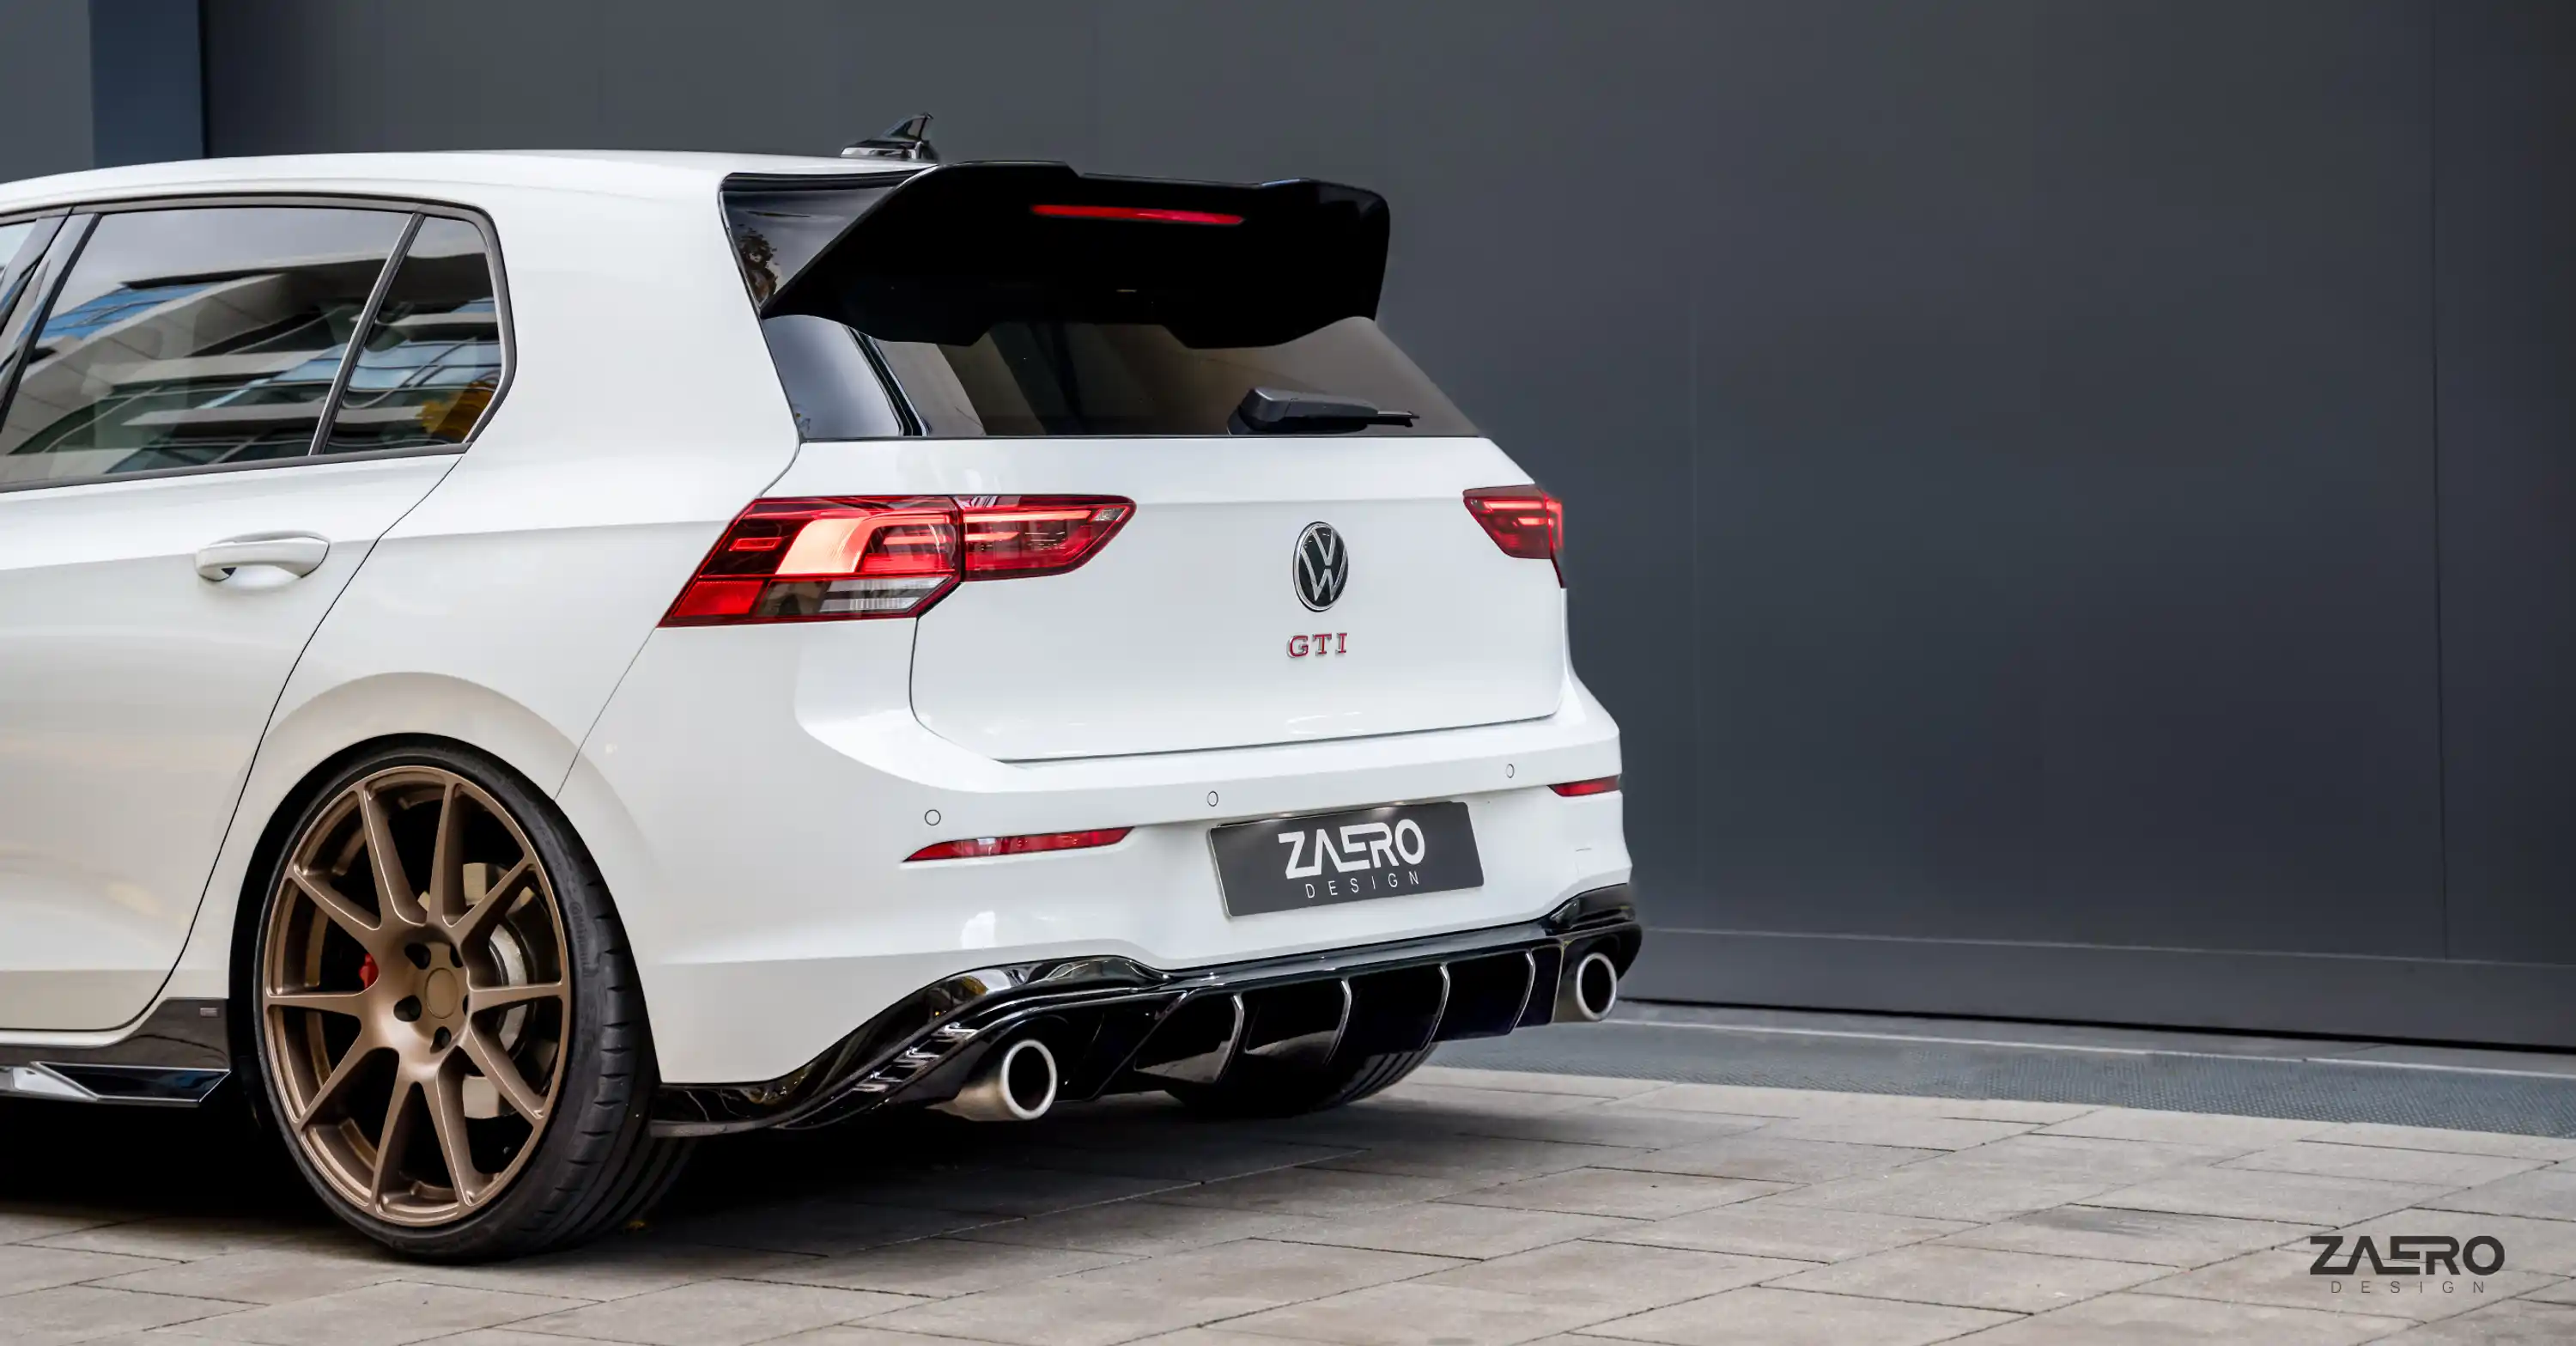 VW Golf 8-Produktplan (2020): Das leisten GTI, TCR und Co.